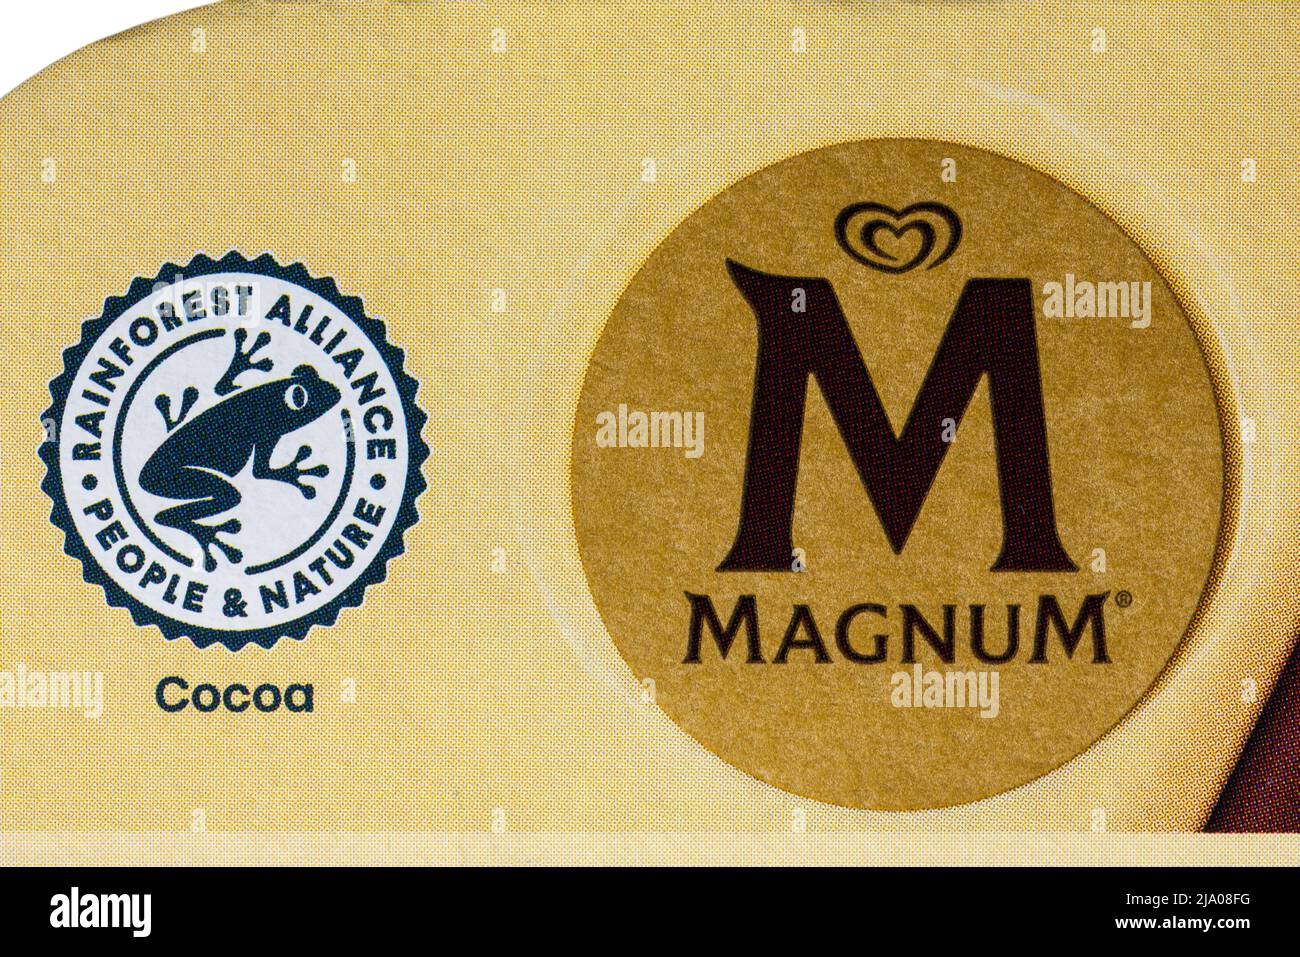 Logo symbole « Rainforest Alliance People & nature Certified » cacao sur  boîte de crèmes glacées Magnum White Chocolate & Berry Remix Photo Stock -  Alamy